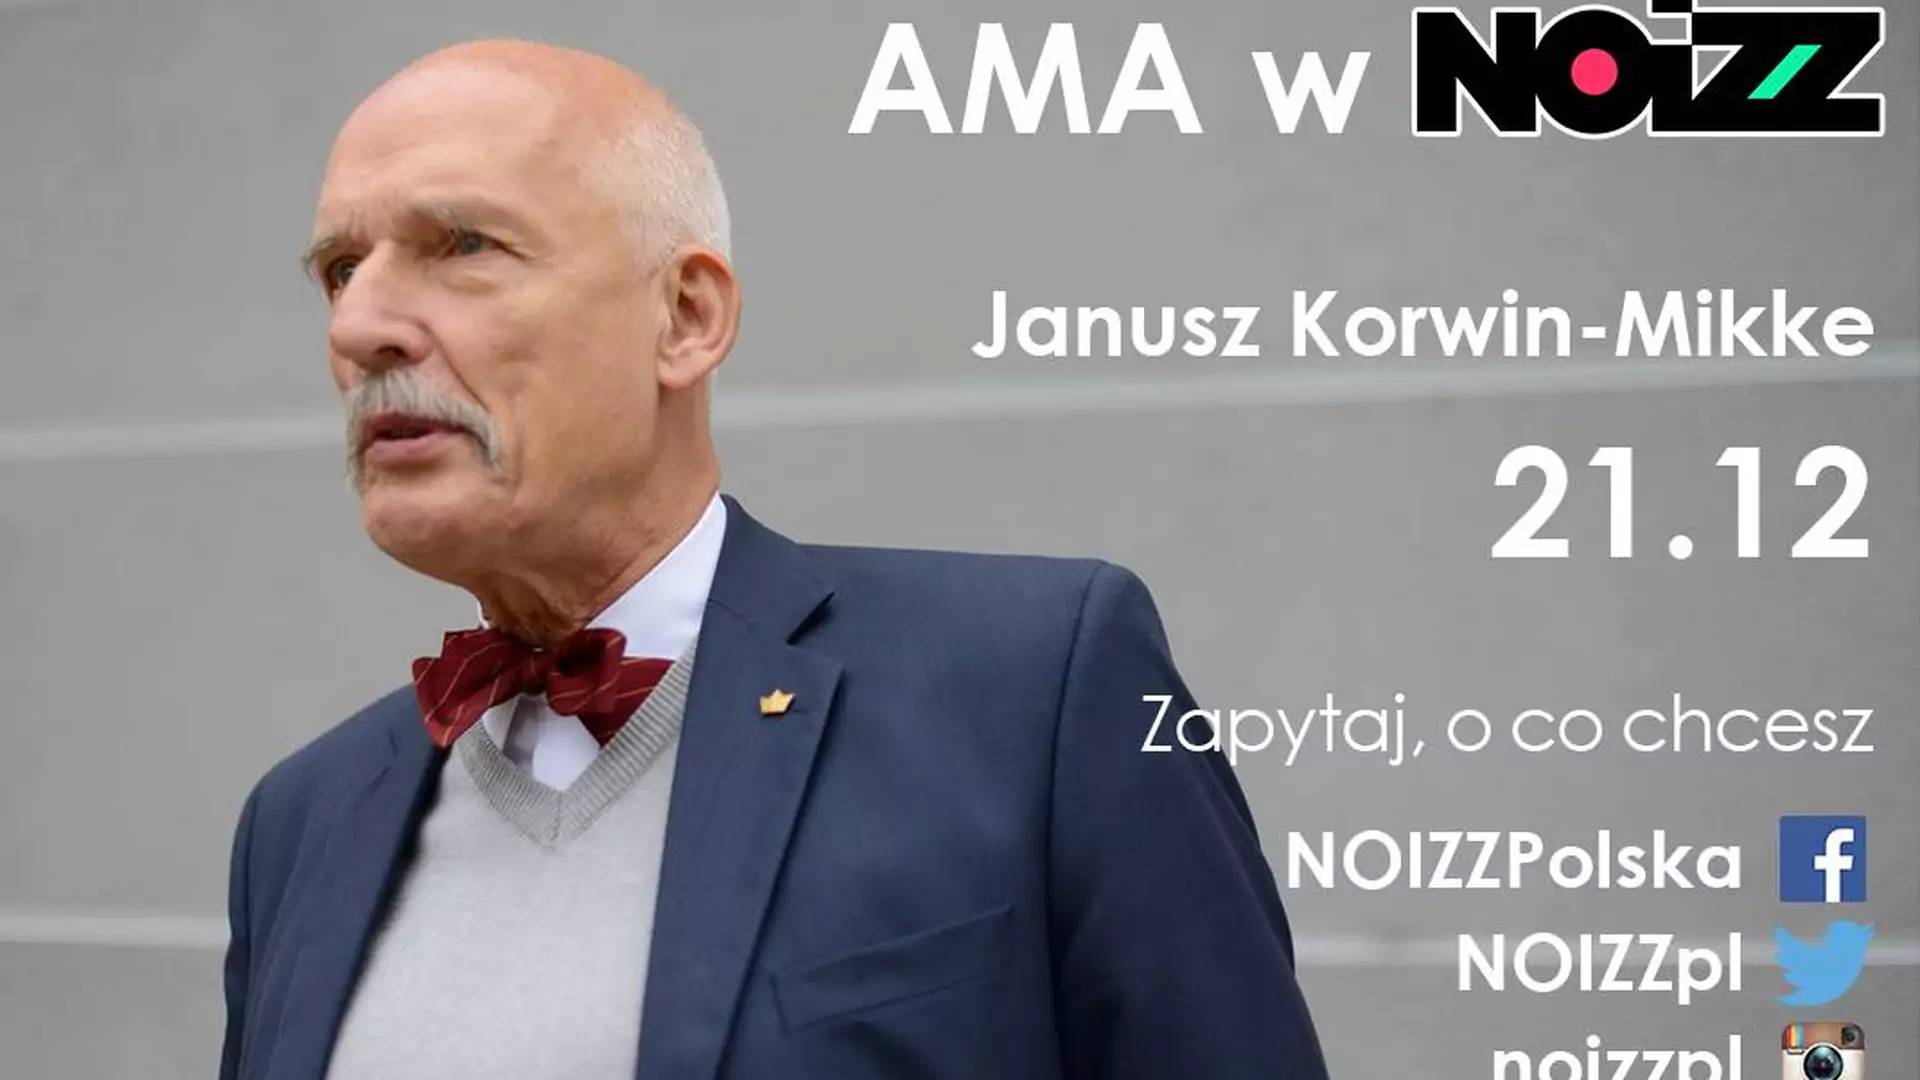 AMA w NOIZZ: Janusz Korwin-Mikke